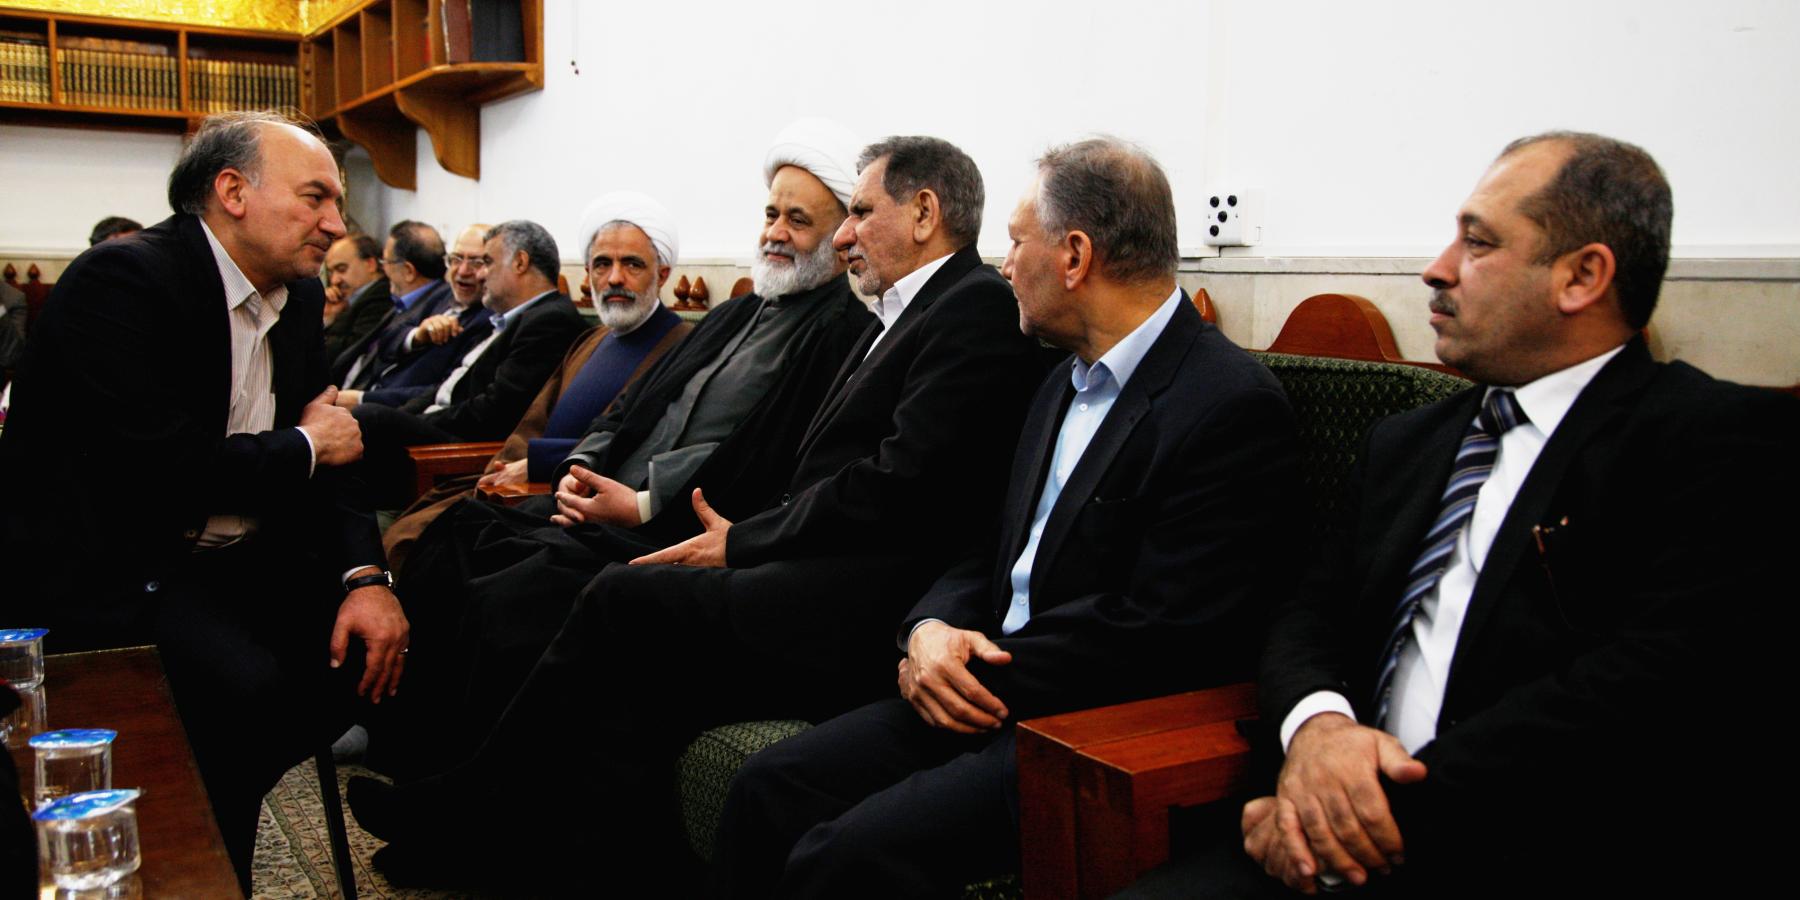 نائب الرئيس الإيراني والوفد المرافق له يتشرف بزيارة الحرم الطاهر لأمير المؤمنين (عليه السلام)